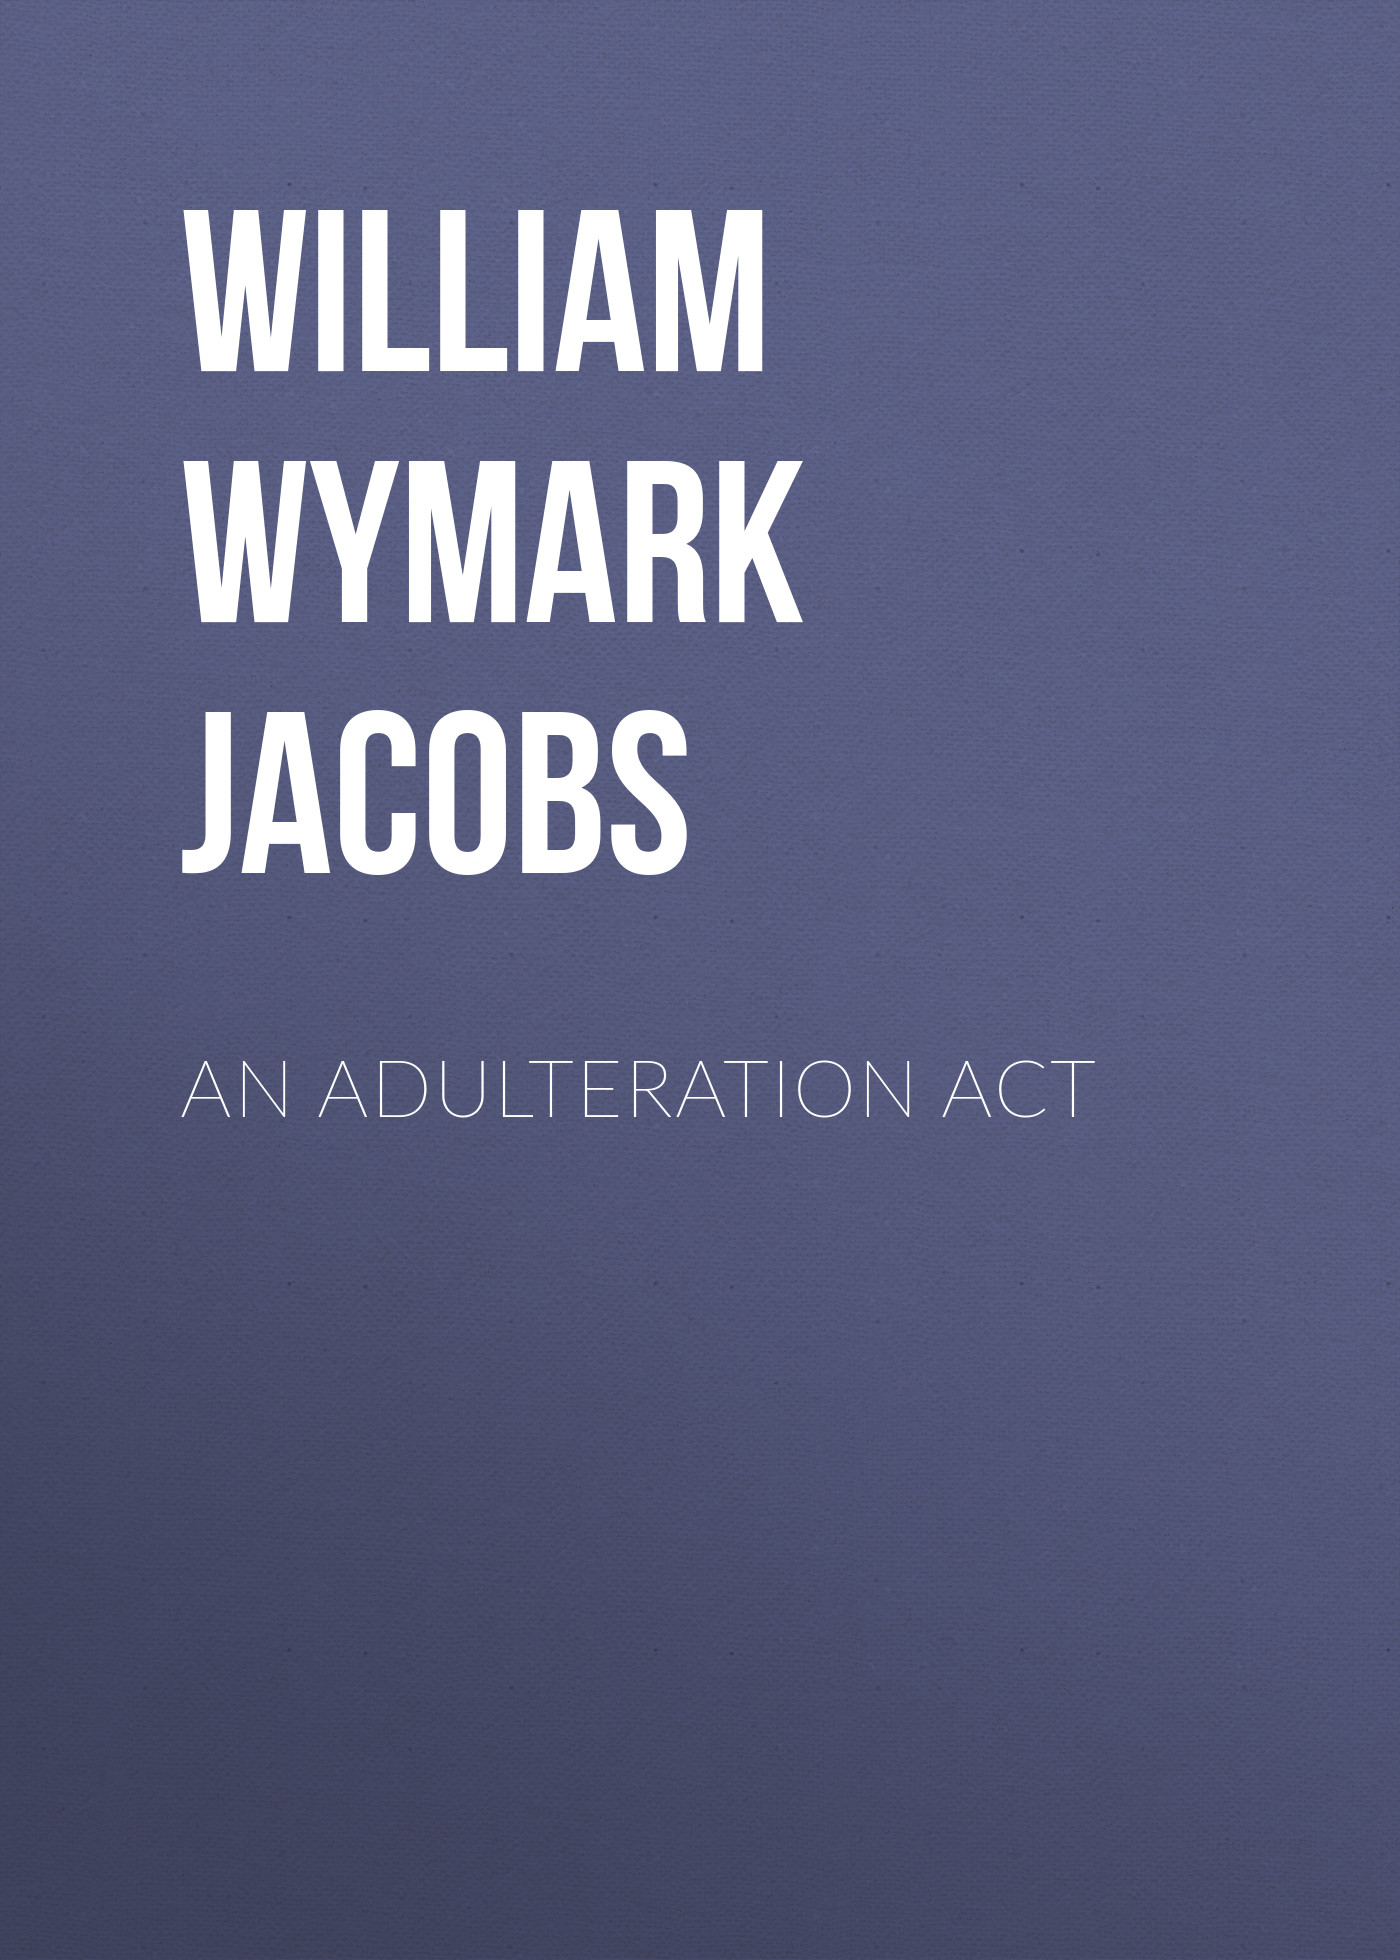 Книга An Adulteration Act из серии , созданная William Wymark Jacobs, может относится к жанру Зарубежный юмор, Зарубежная старинная литература, Зарубежная классика. Стоимость электронной книги An Adulteration Act с идентификатором 34843702 составляет 0 руб.